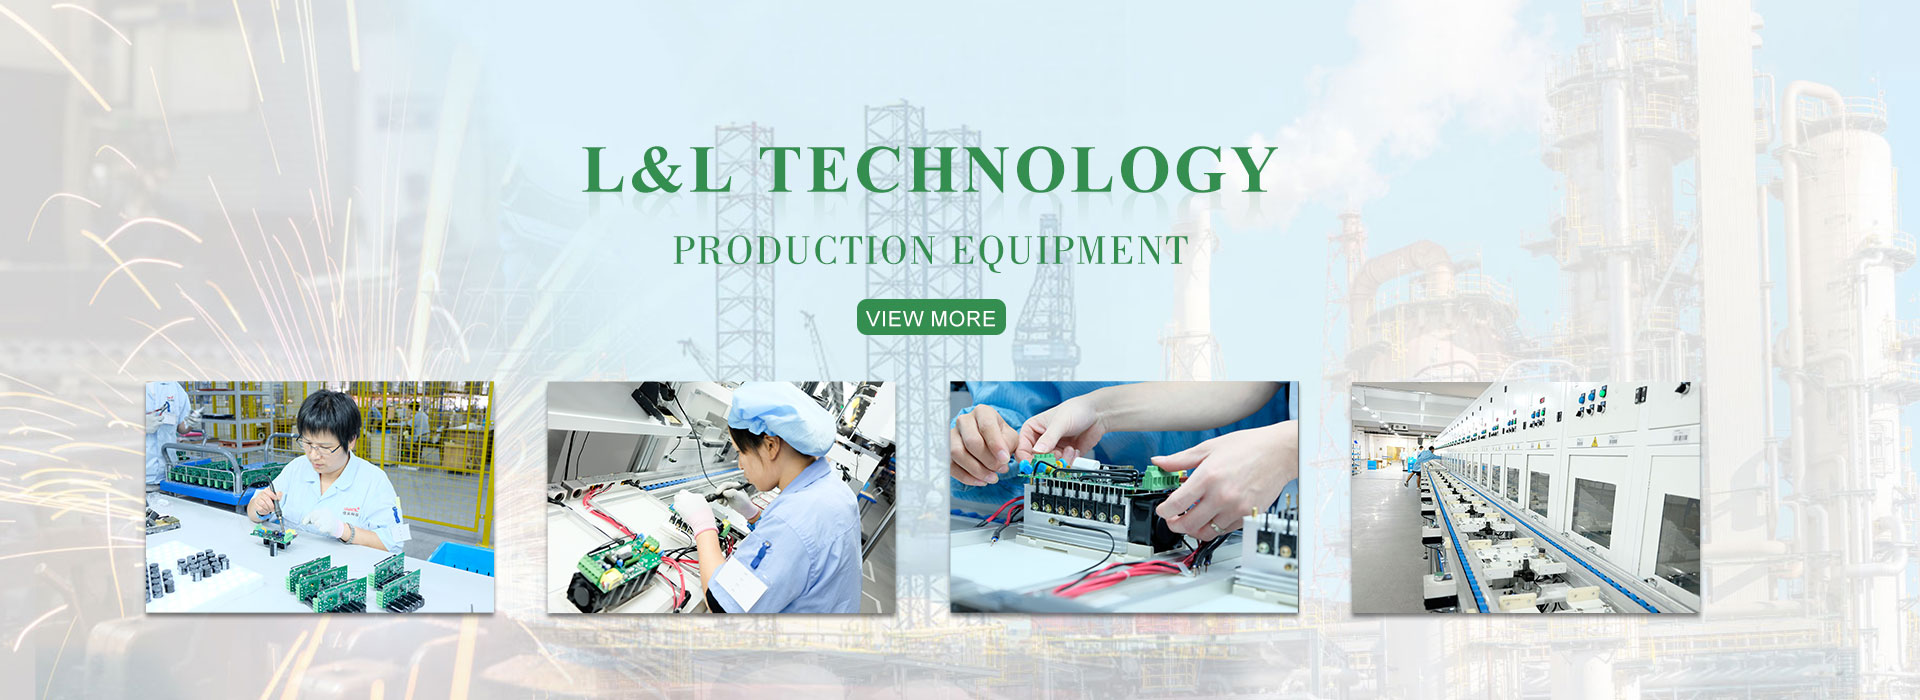 Чжэцзян L&L Technology Co., Ltd. Производственное оборудование